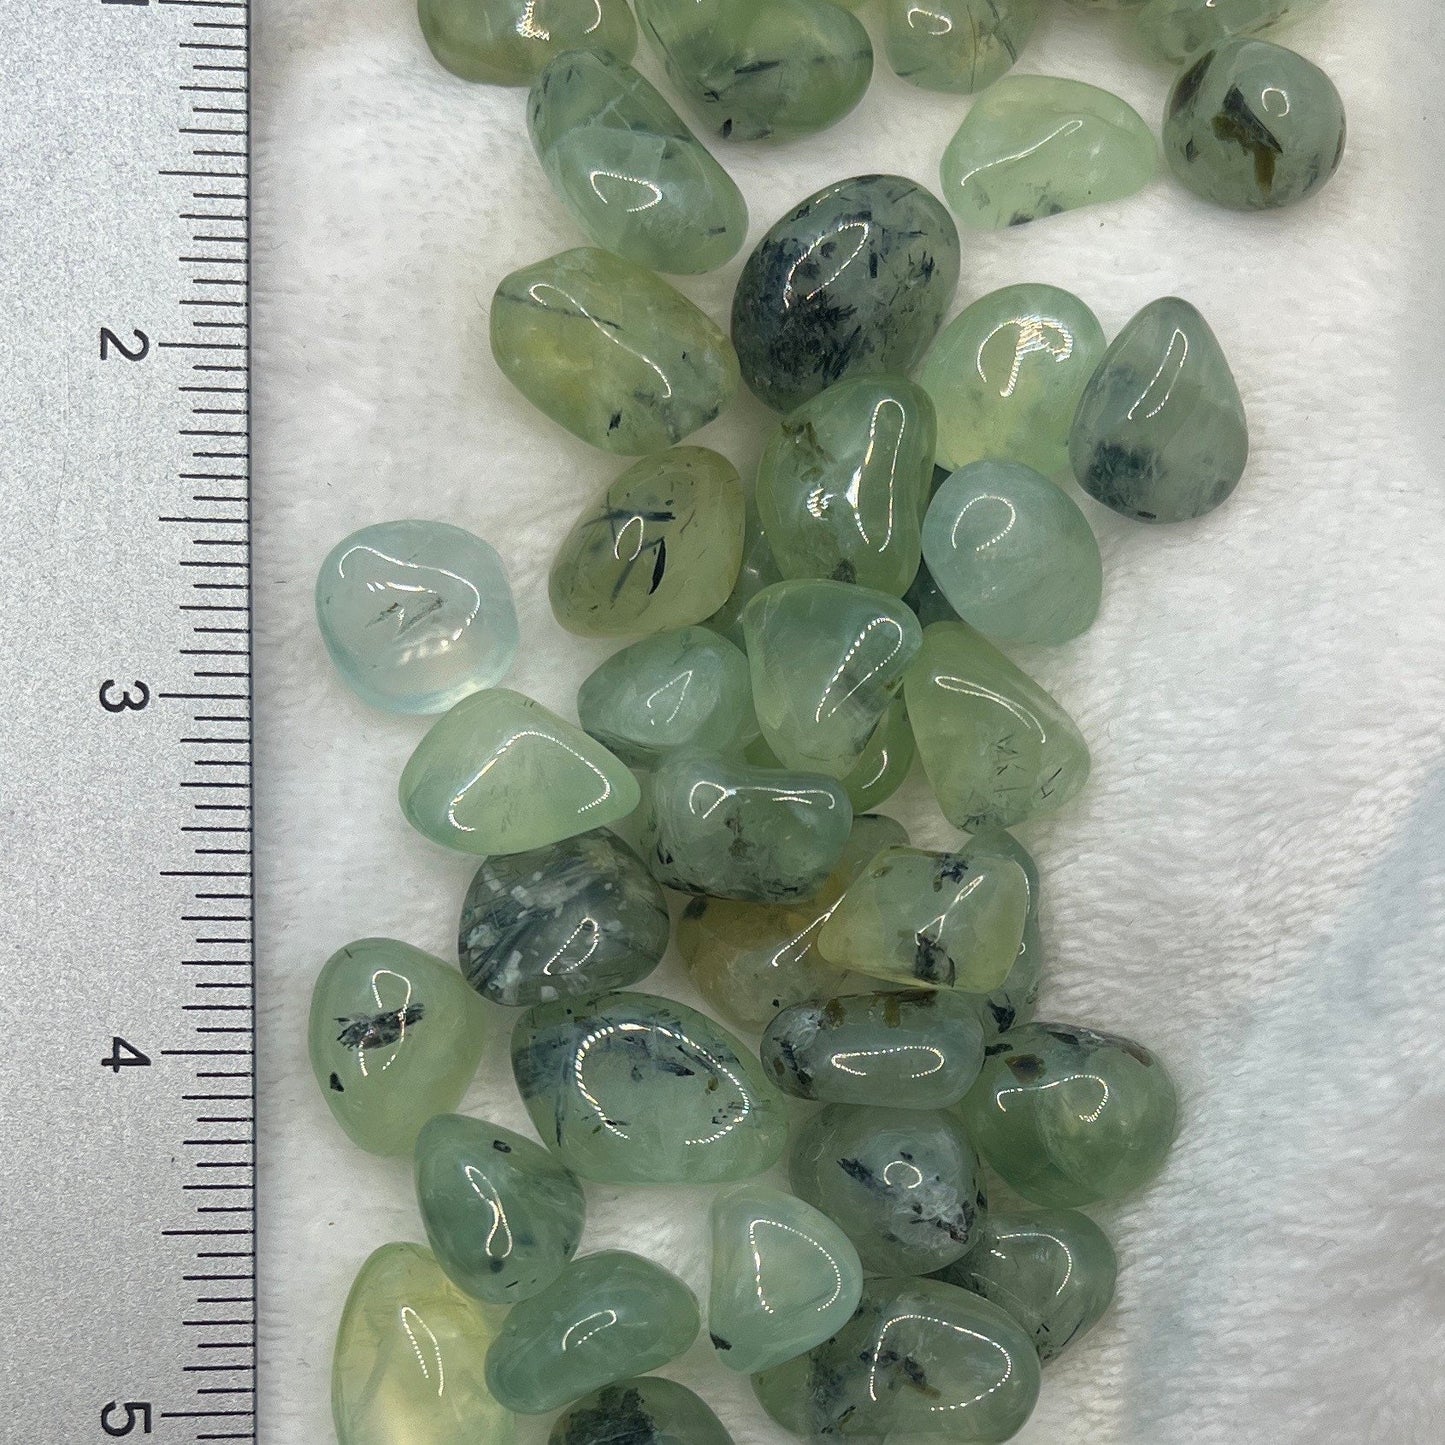 Green Prehnite, Tumbled, Polished Stone (Approx. 1/2”- 1”) Bin-1339